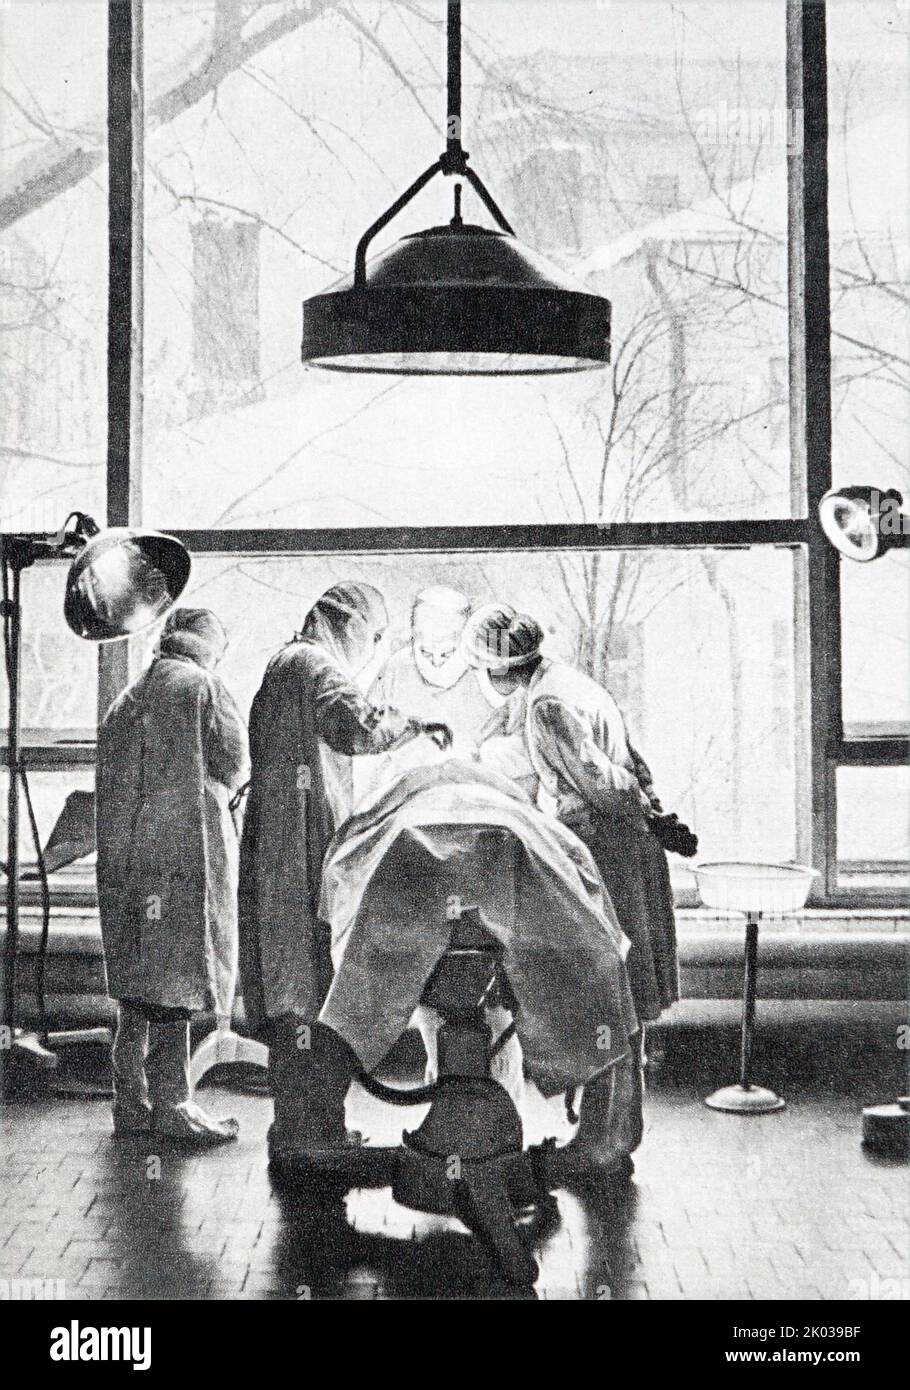 Chirurgischer Eingriff in einem russischen Krankenhaus der sowjetzeit 1962. Stockfoto